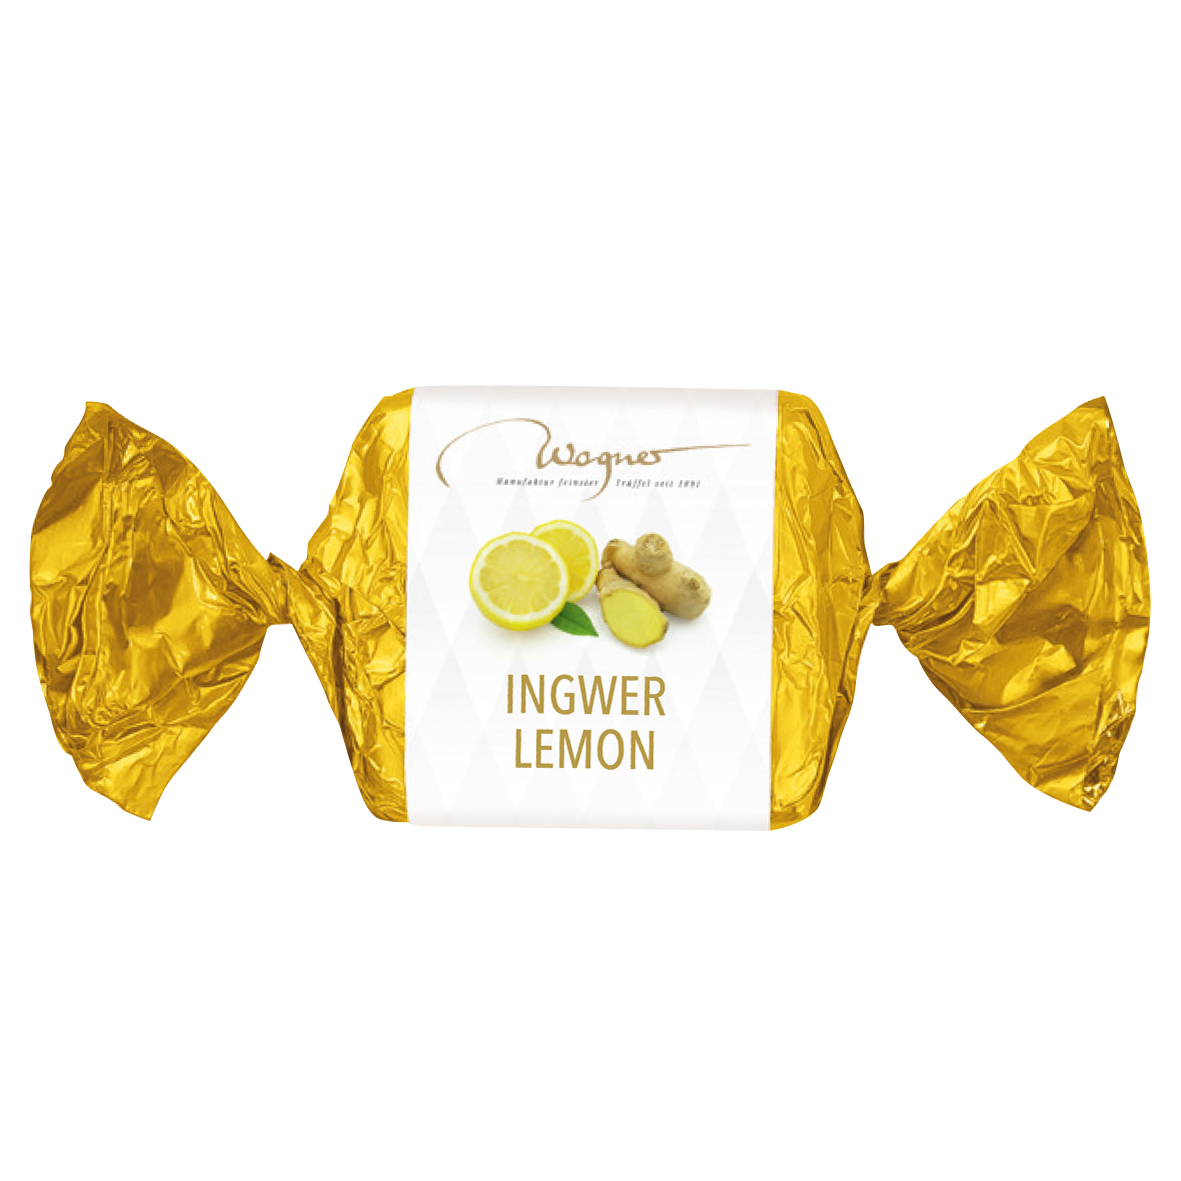 Display Happen Lemon Ginger